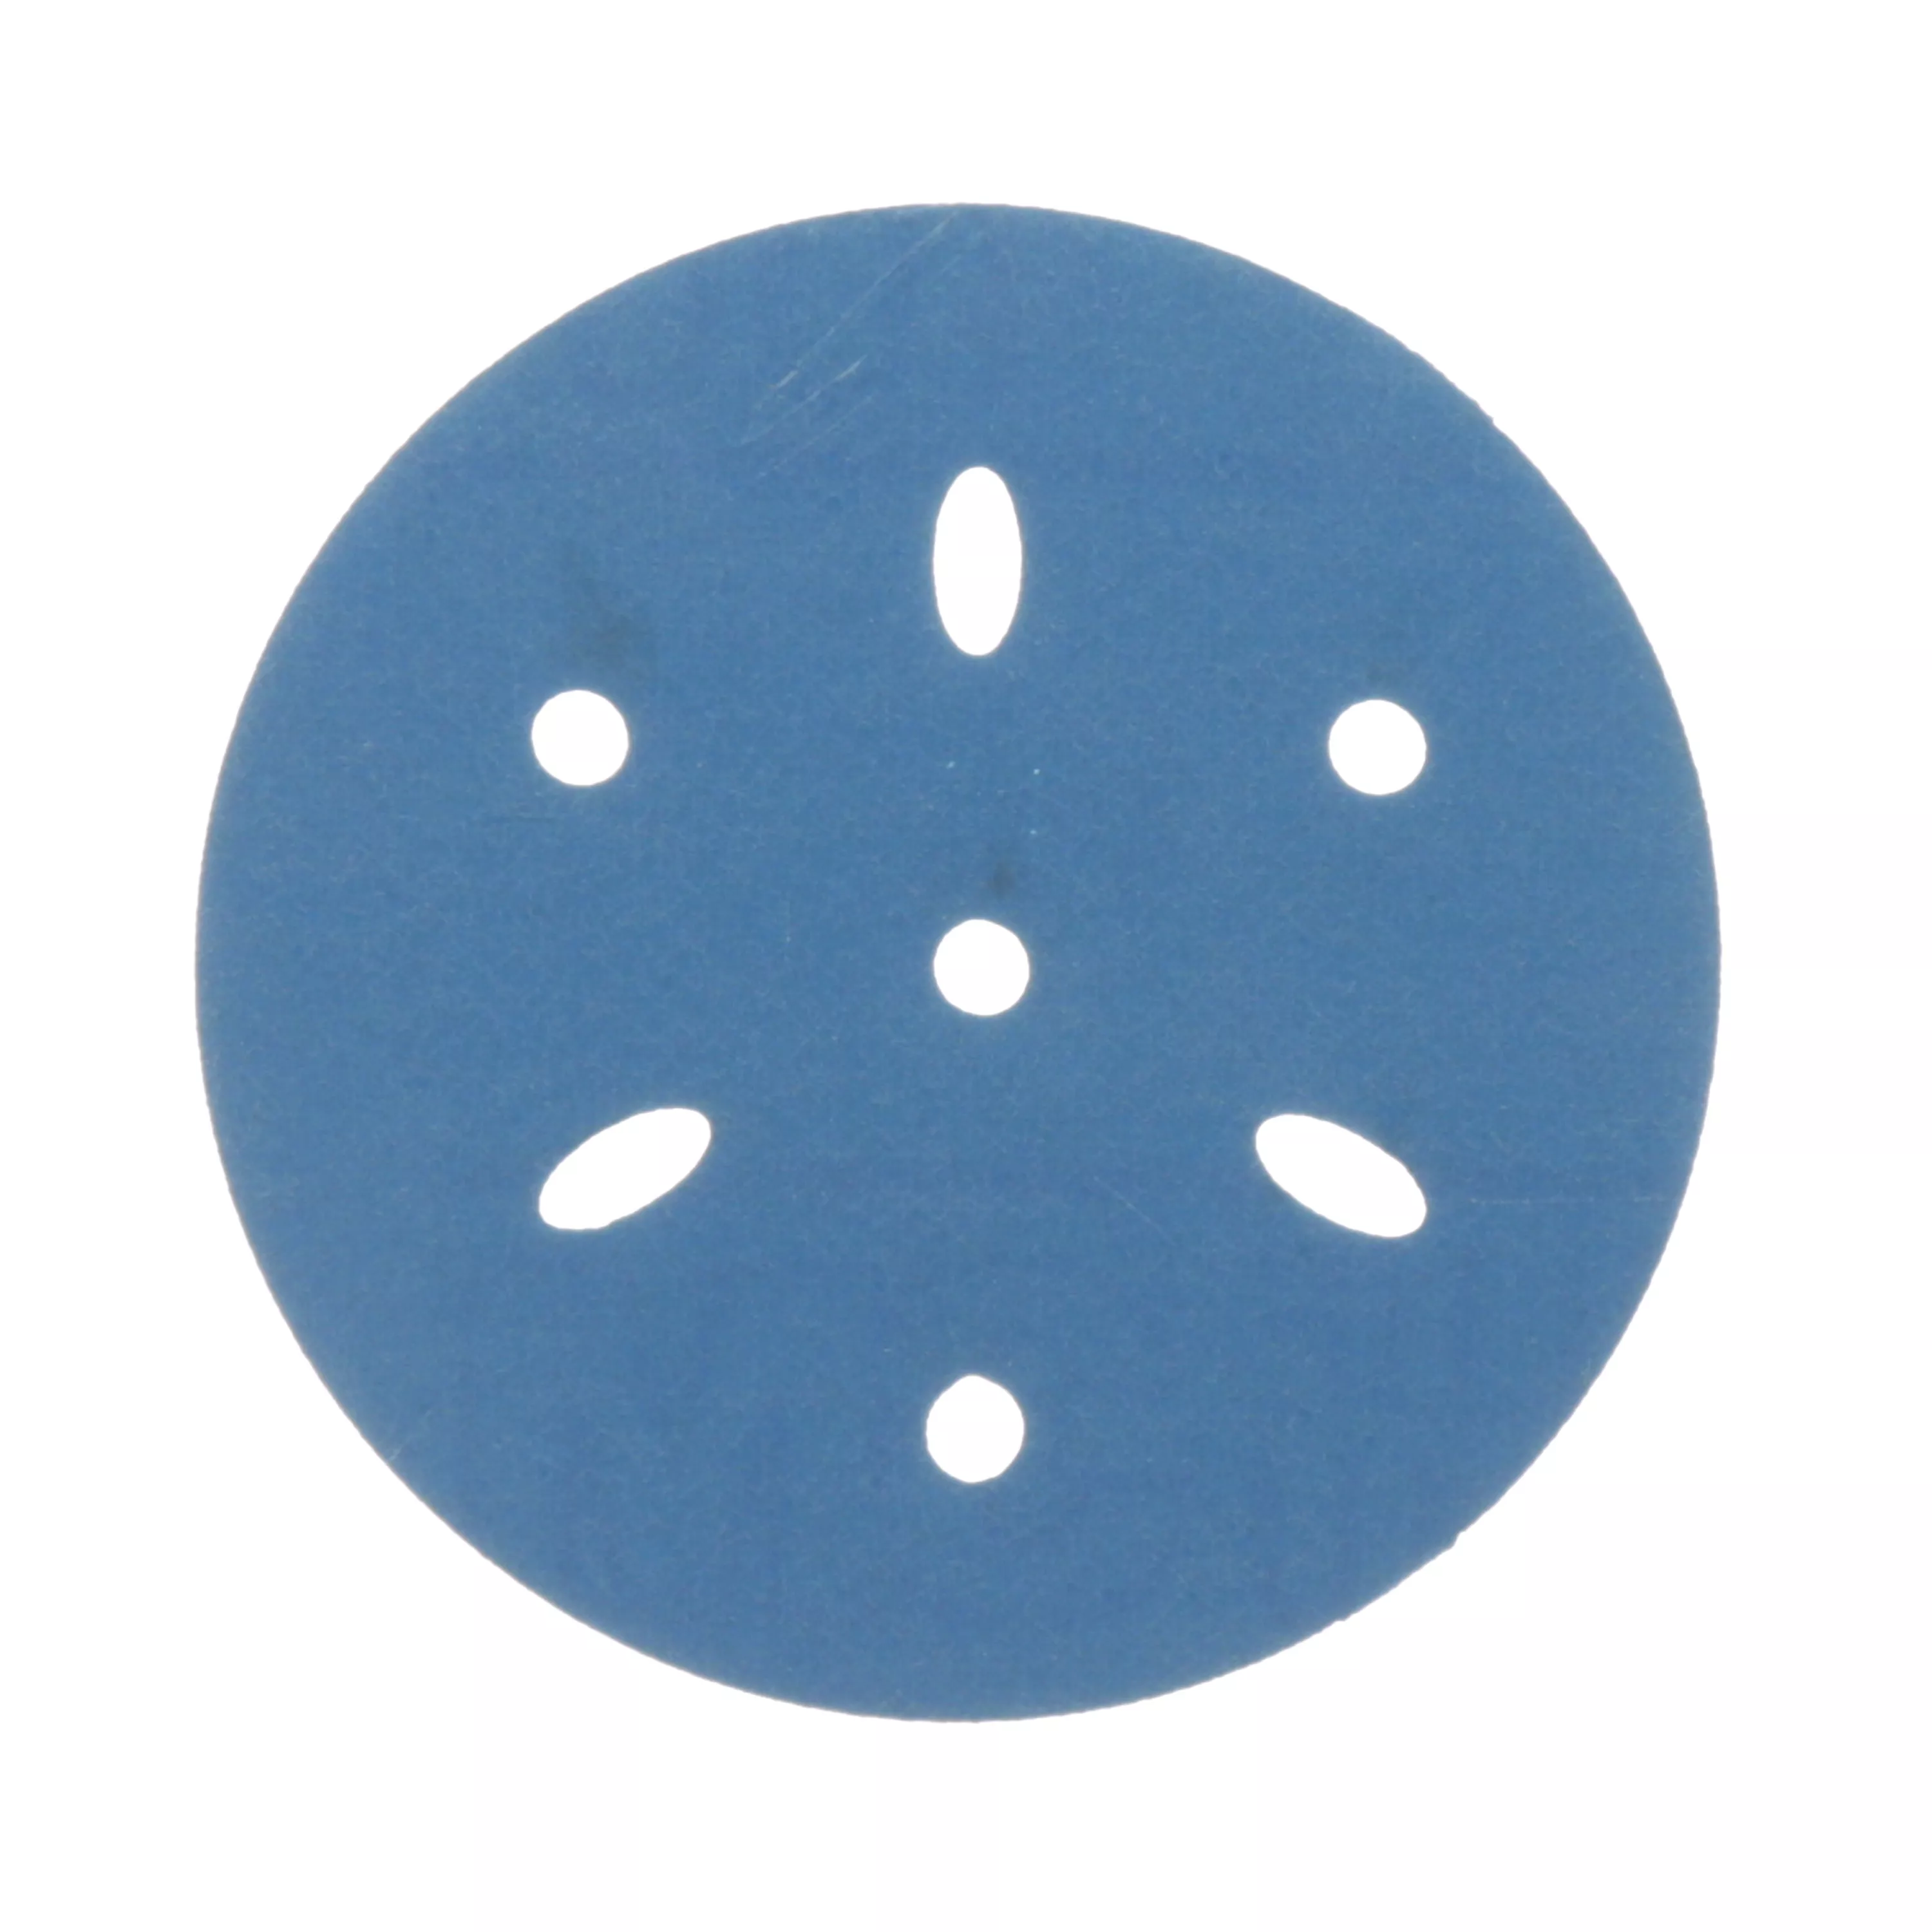 3M™ Hookit™ Blue Abrasive Disc 321U Multi-hole, 36151, 3 in, 400, 50
discs per carton, 4 cartons per case